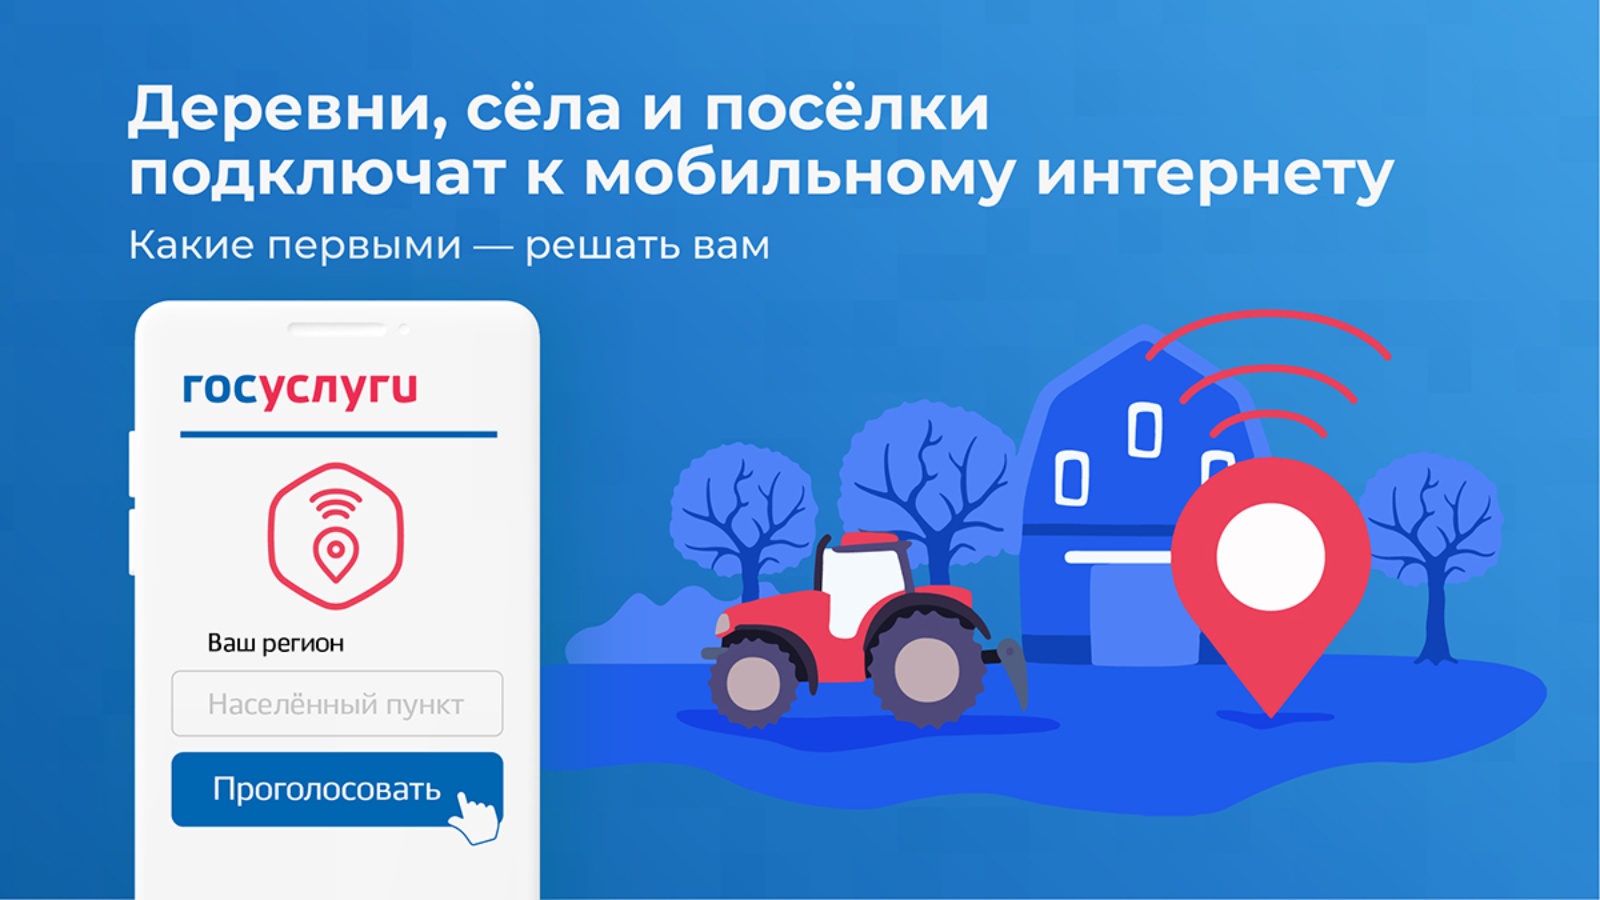 12 ноября завершается голосование по вопросу обеспечения высокоскоростным мобильным интернетом малочисленных населённых пунктов России.